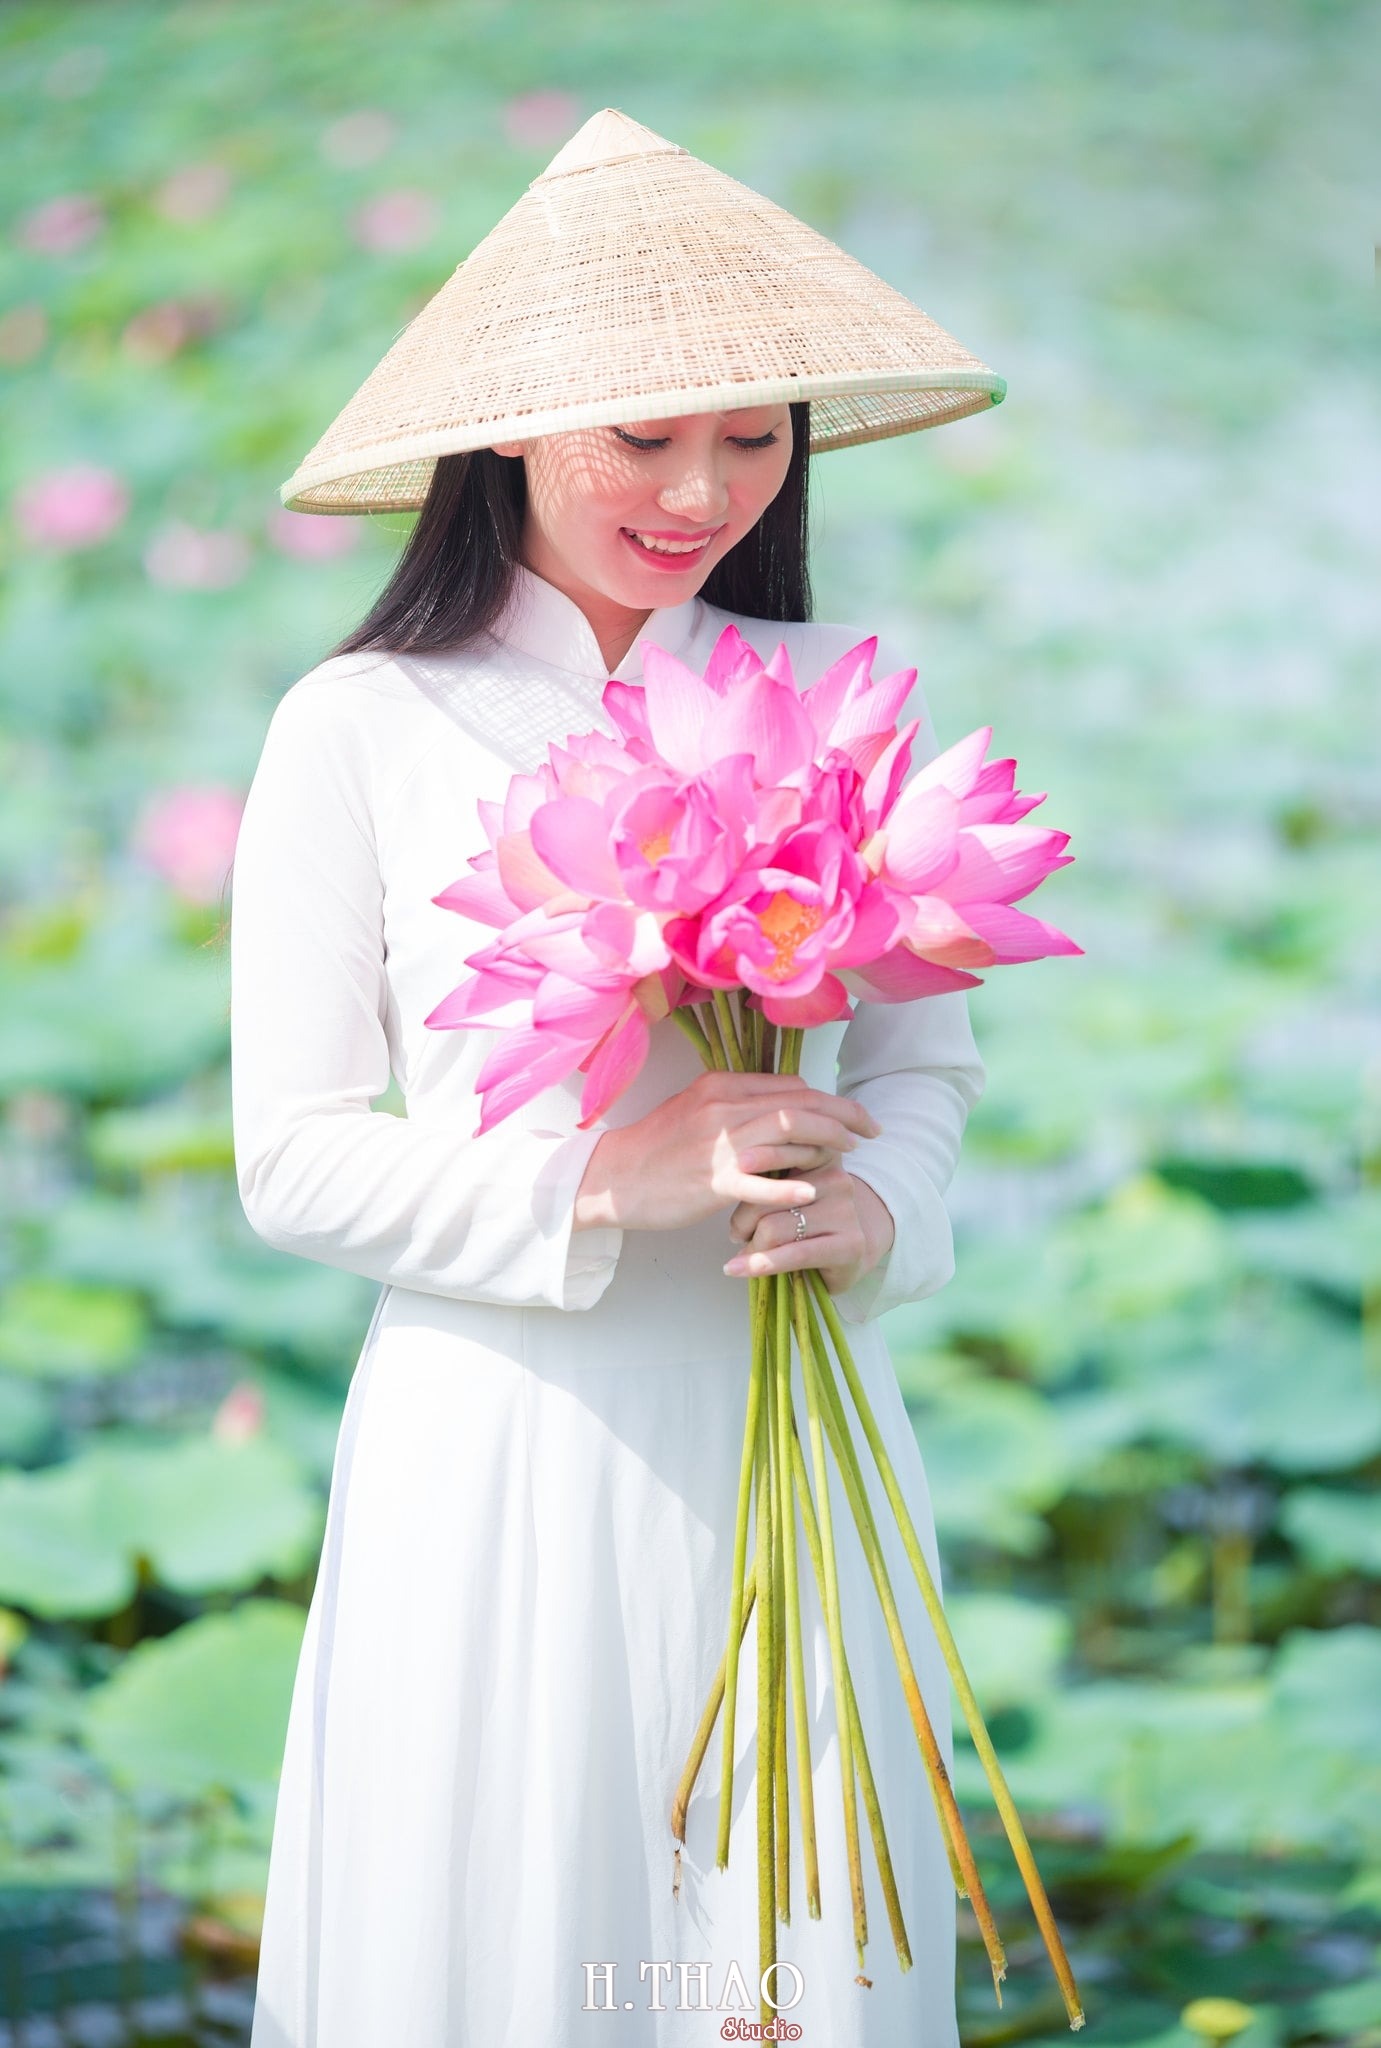 Hoa sen là biểu tượng văn hóa đặc trưng của Việt Nam, mang đến những giá trị tinh thần cao đẹp như sắc thái bình an, sự thanh thoát và đẹp đẽ. Hình ảnh hoa sen sẽ khiến bạn mê mẩn với sắc trắng tinh khôi và hình dáng đầy tinh tế.